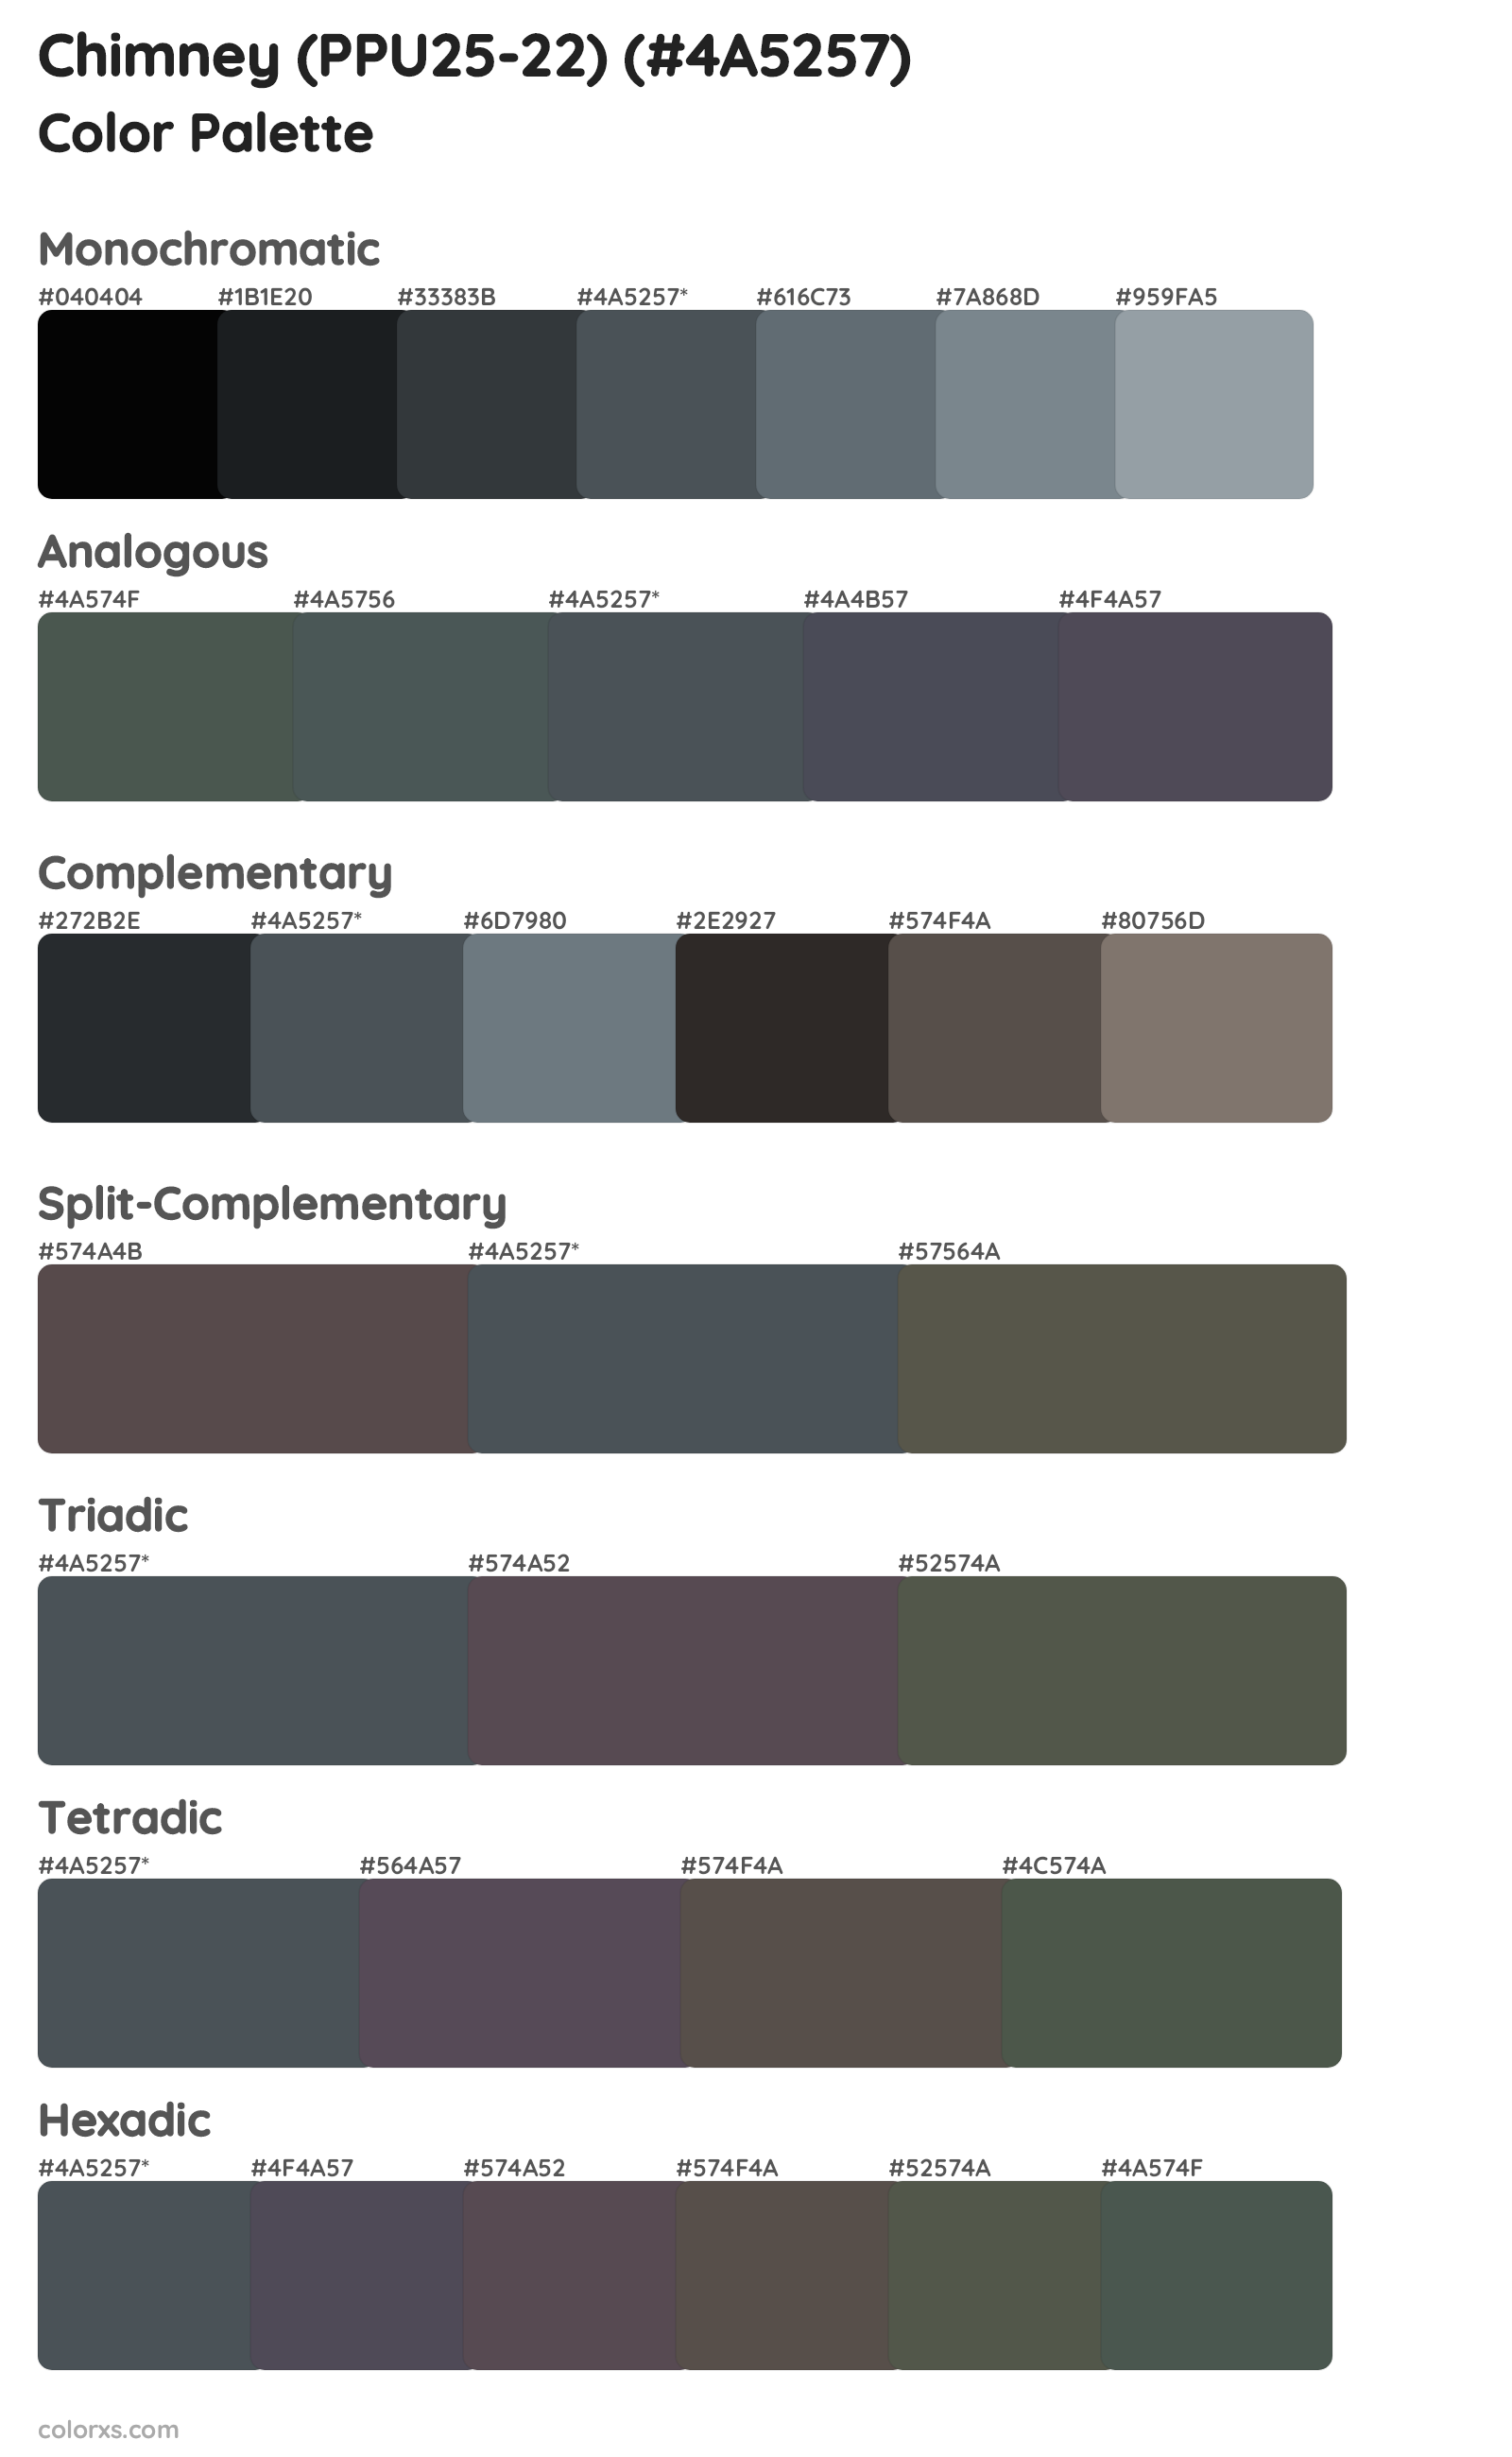 Chimney (PPU25-22) Color Scheme Palettes